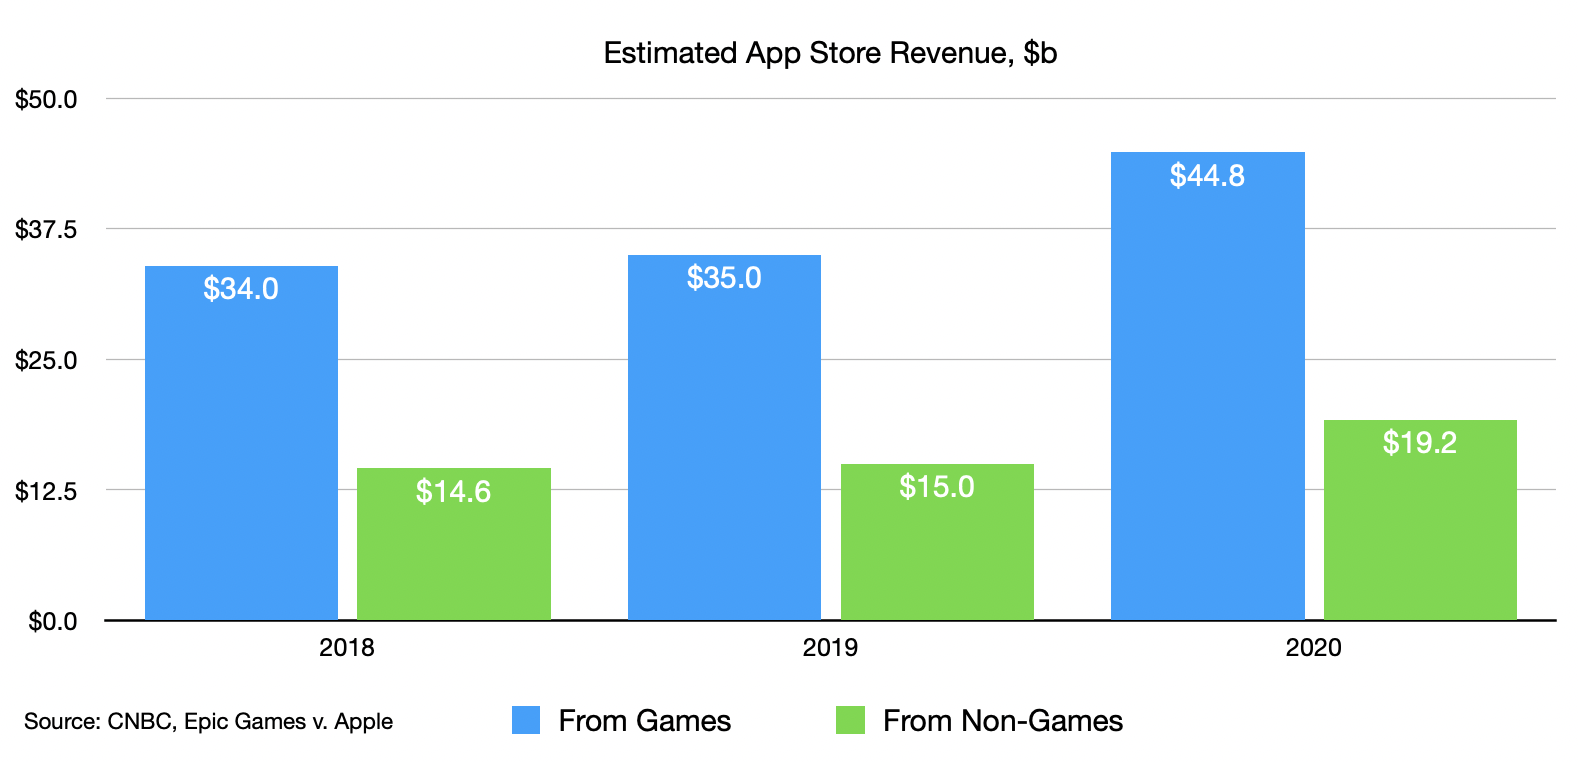 Estimated App Store Revenue